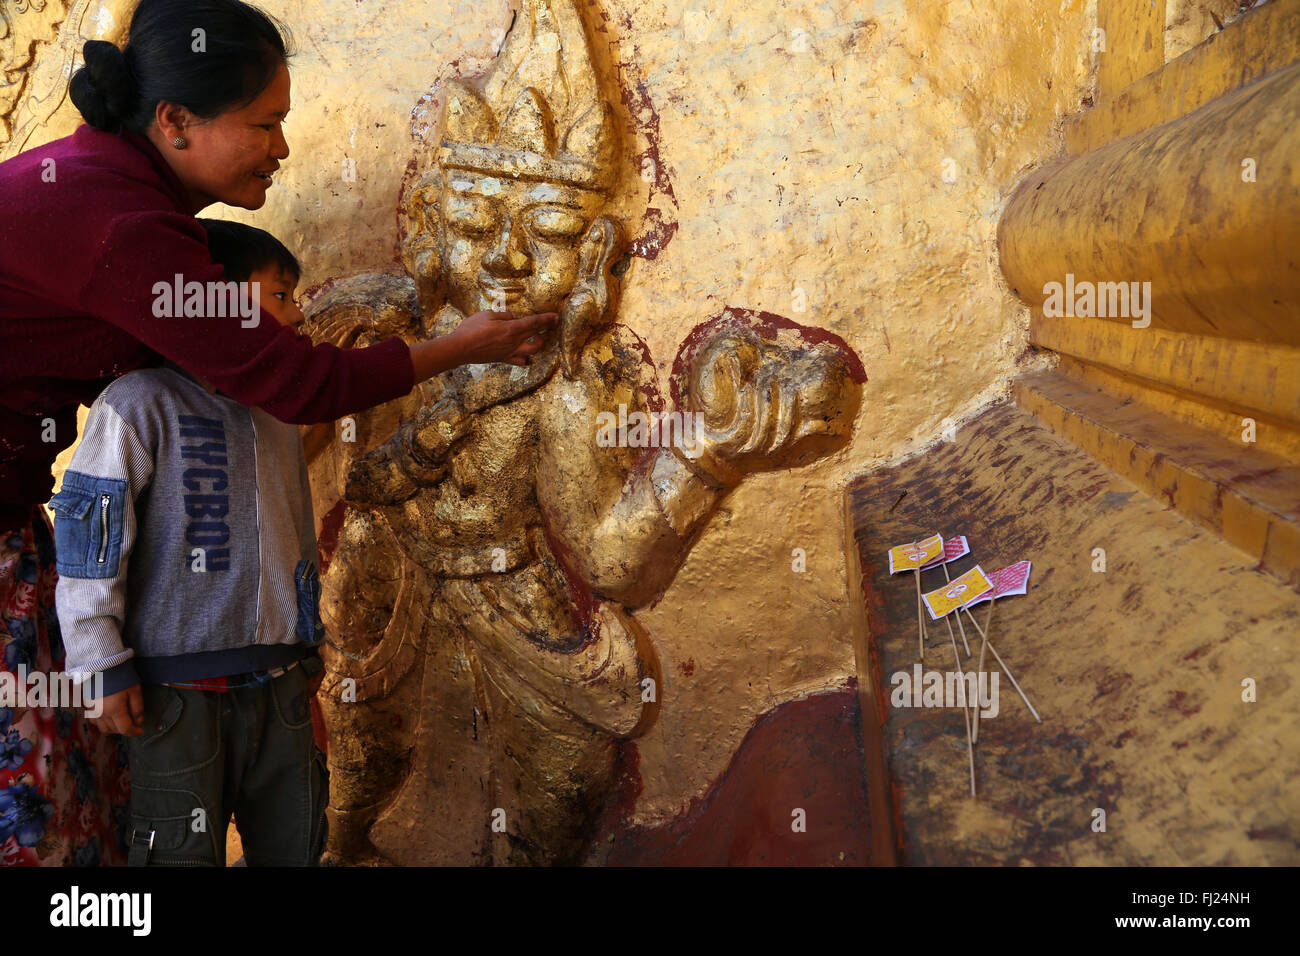 Mutter und Kind malen buddhistische Pagode mit goldleaves in Myanmar - die Shwedagon-Pagode in Rangun Stockfoto